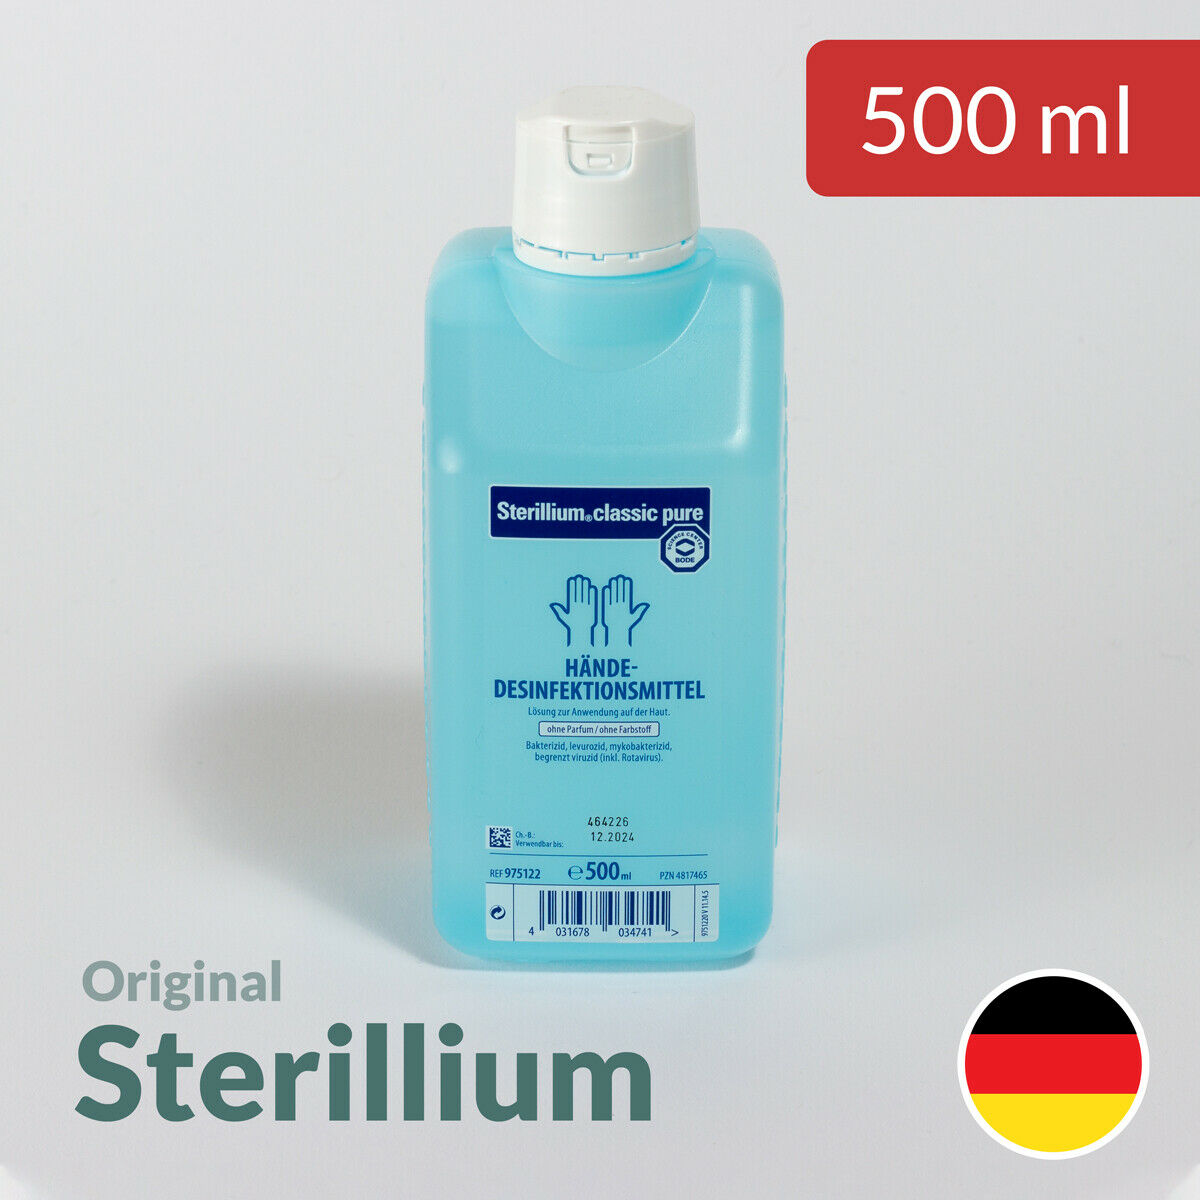 Original Sterillium classic